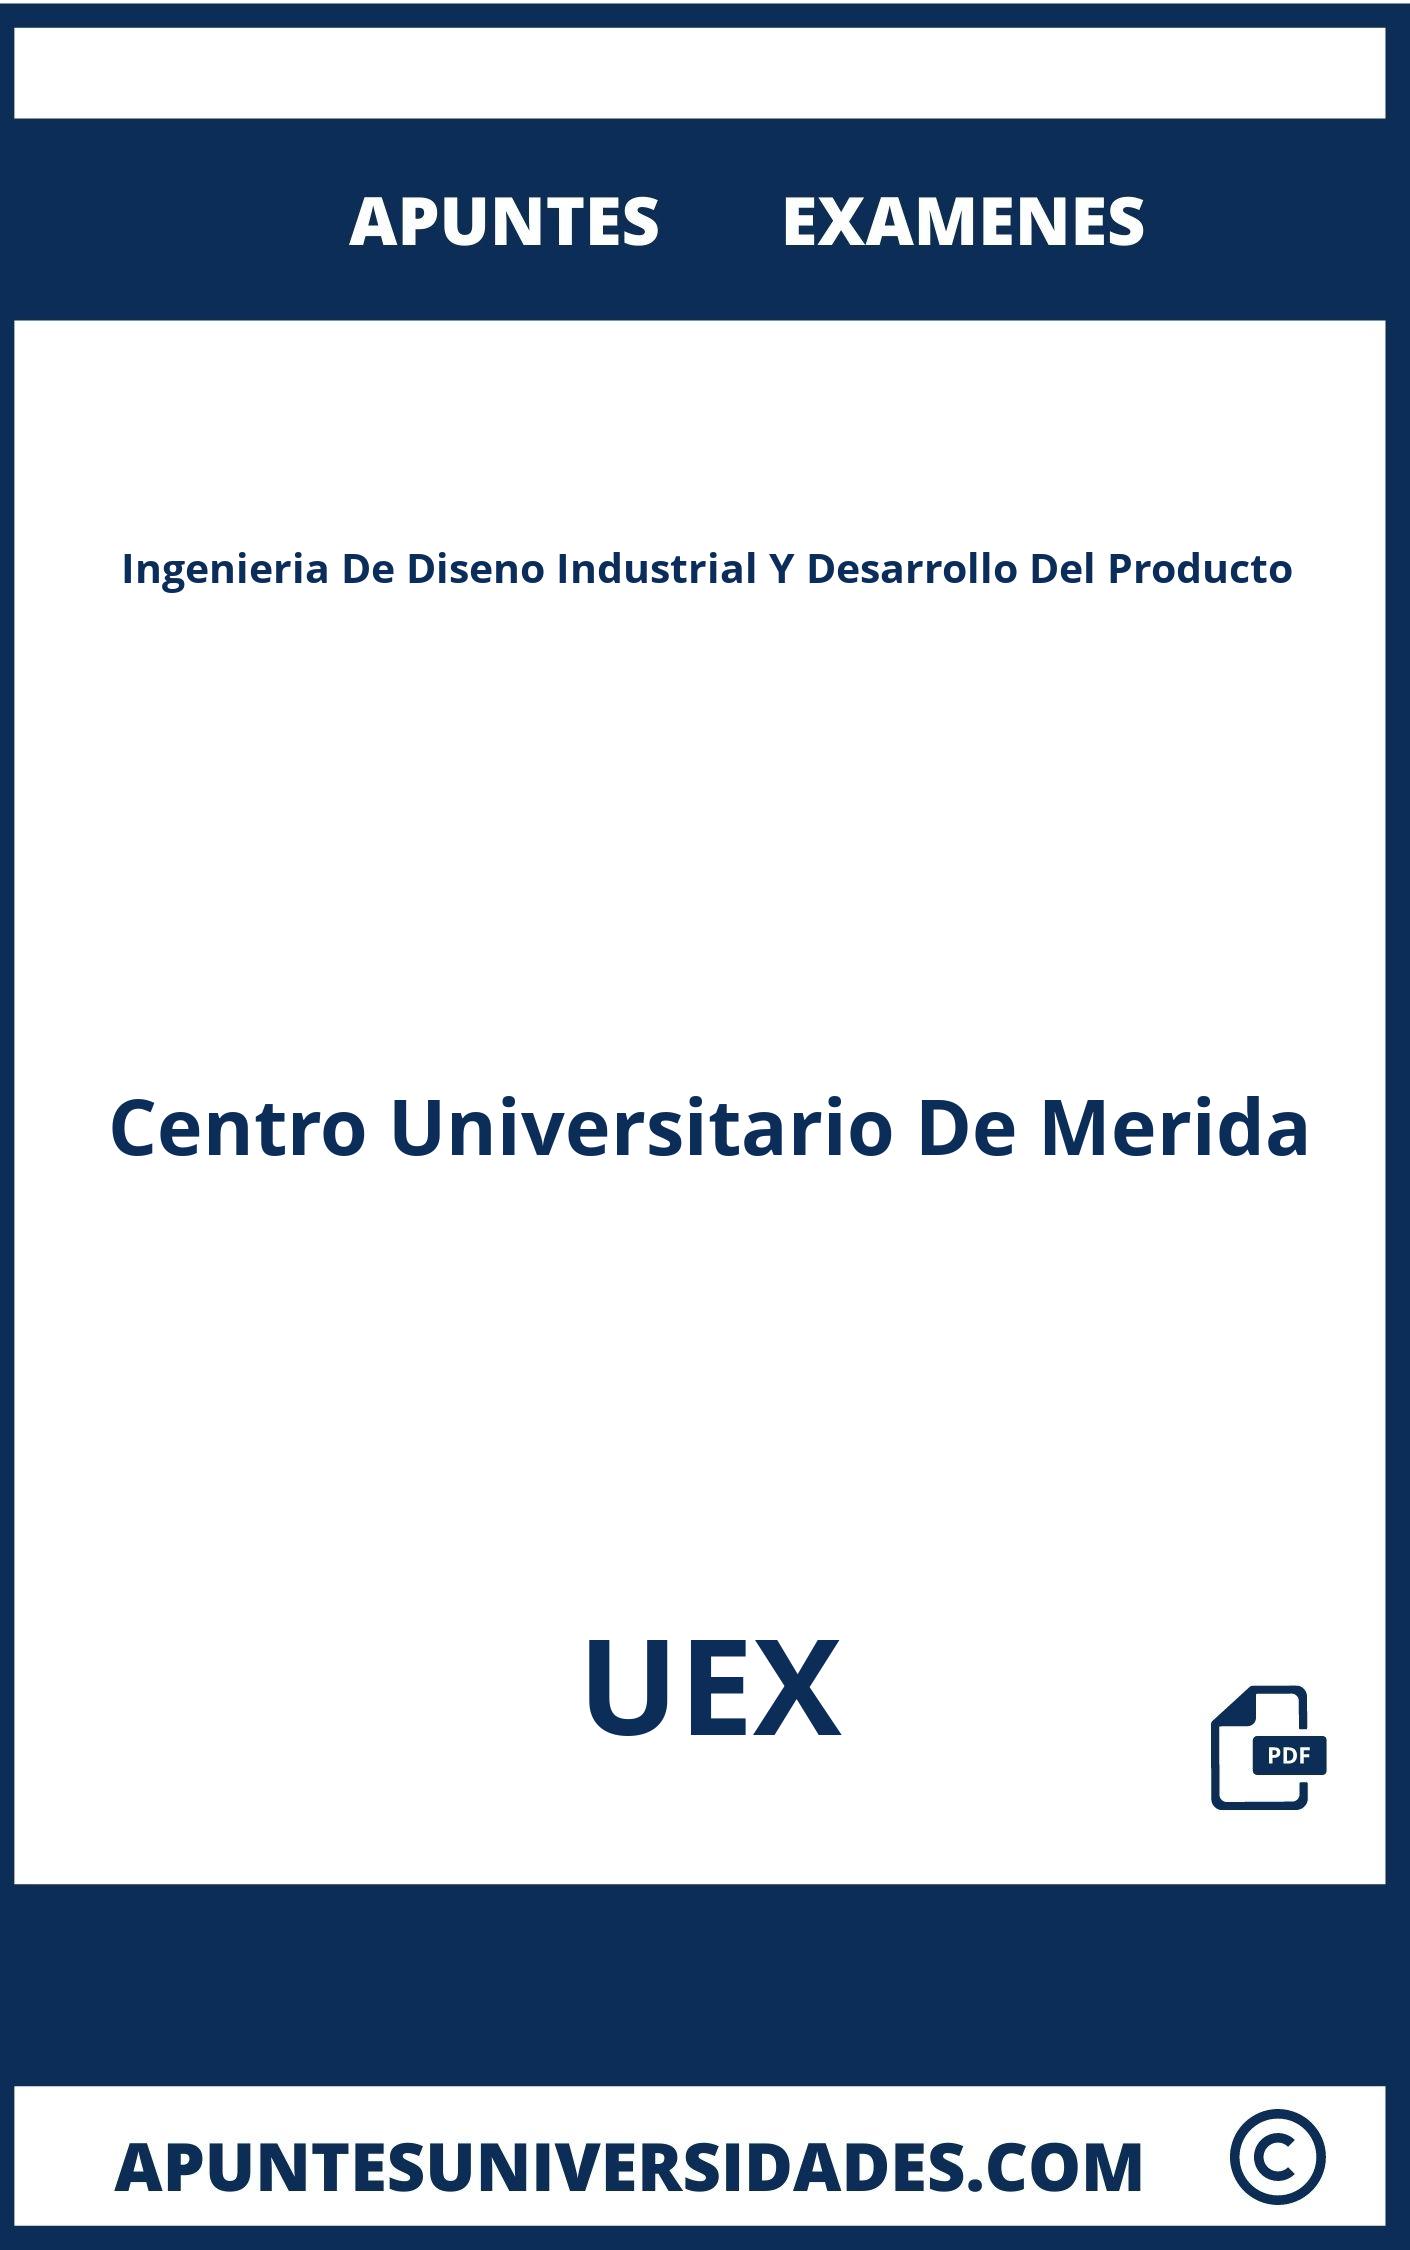 Examenes y Apuntes Ingenieria De Diseno Industrial Y Desarrollo Del Producto UEX